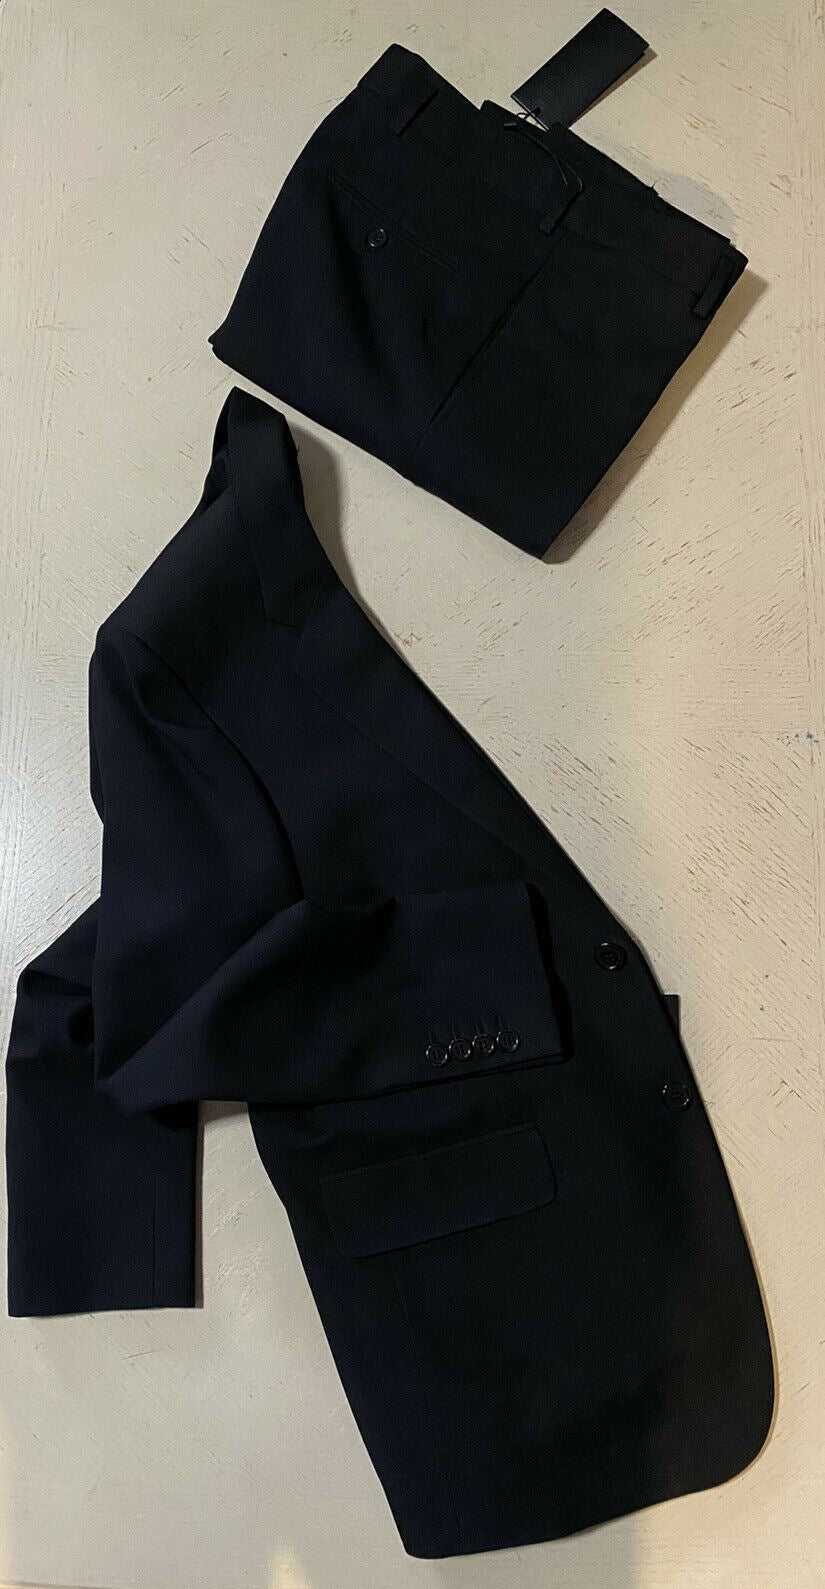 New $2990 Saint Laurent Men’s Suit Black 44R US/54R Eu Italy